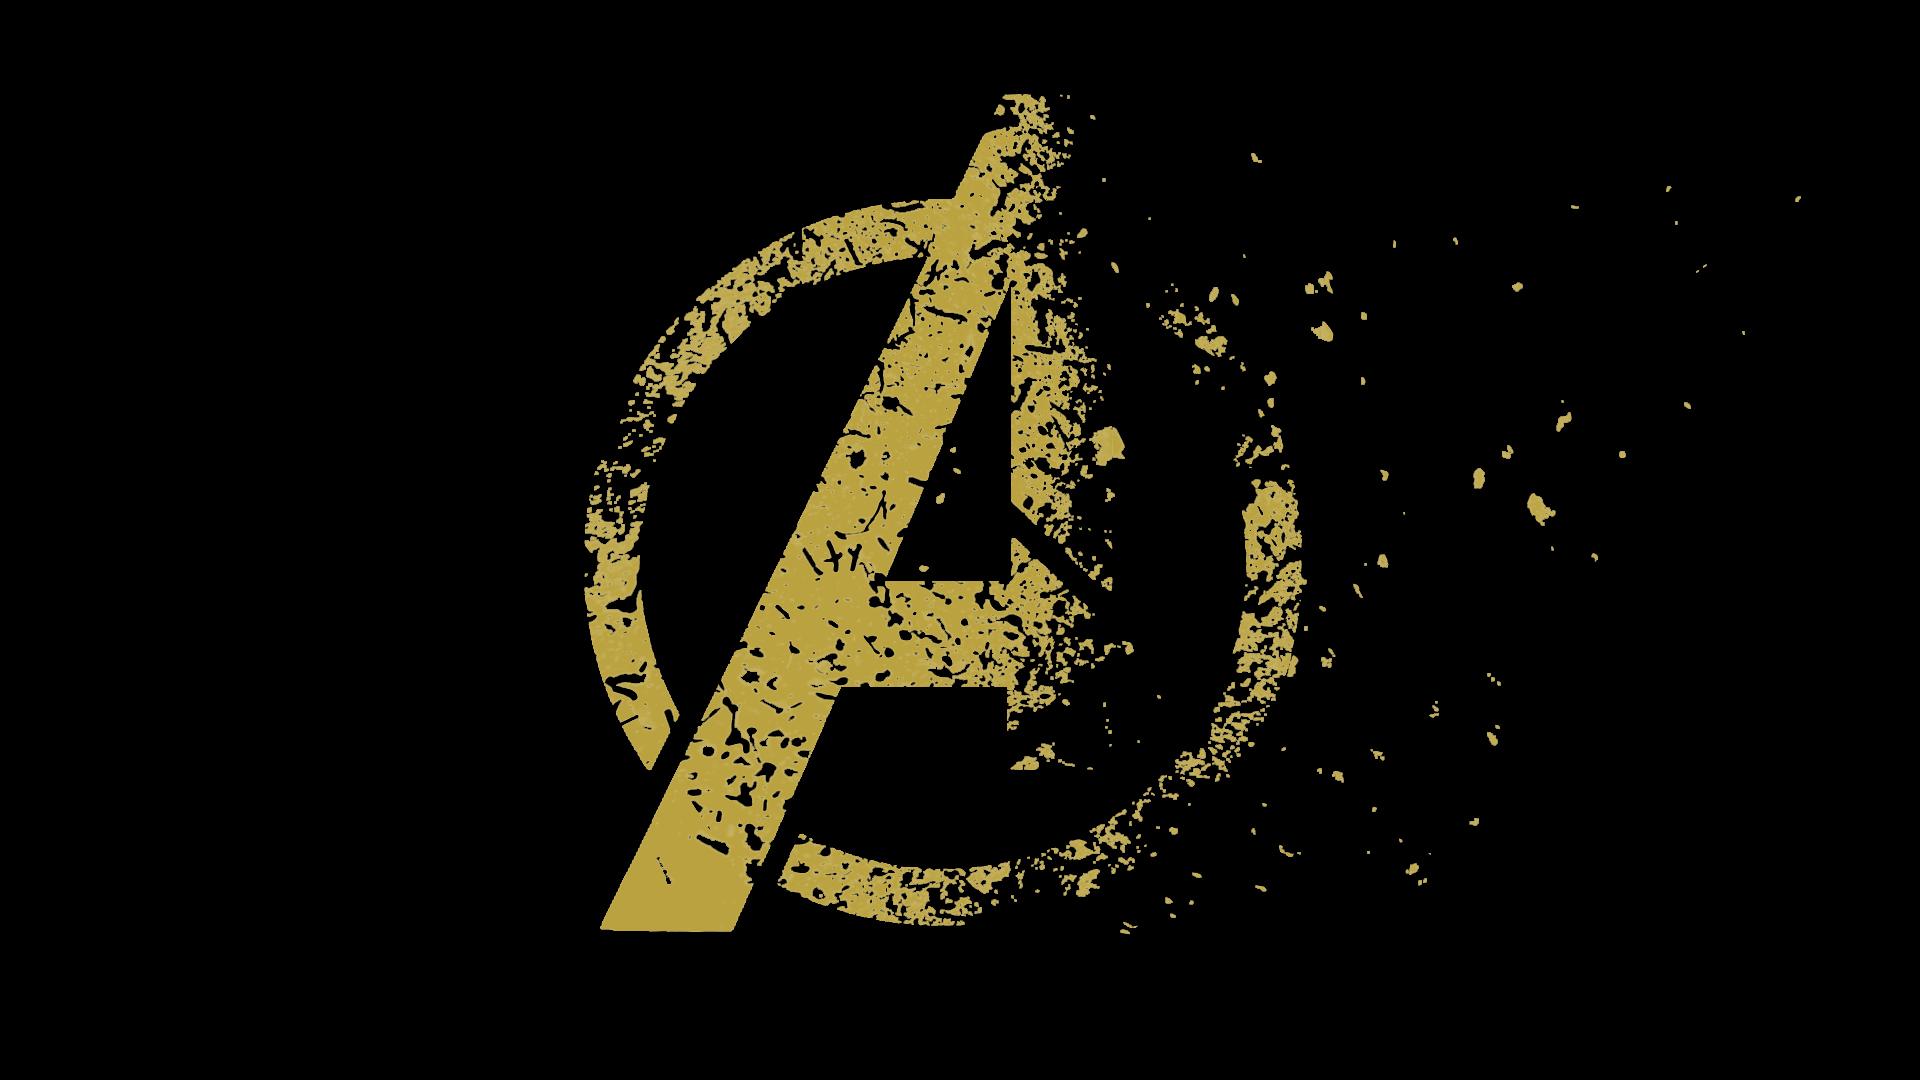 Avengers Endgame Movie Logo Disintegrating Nicksayan